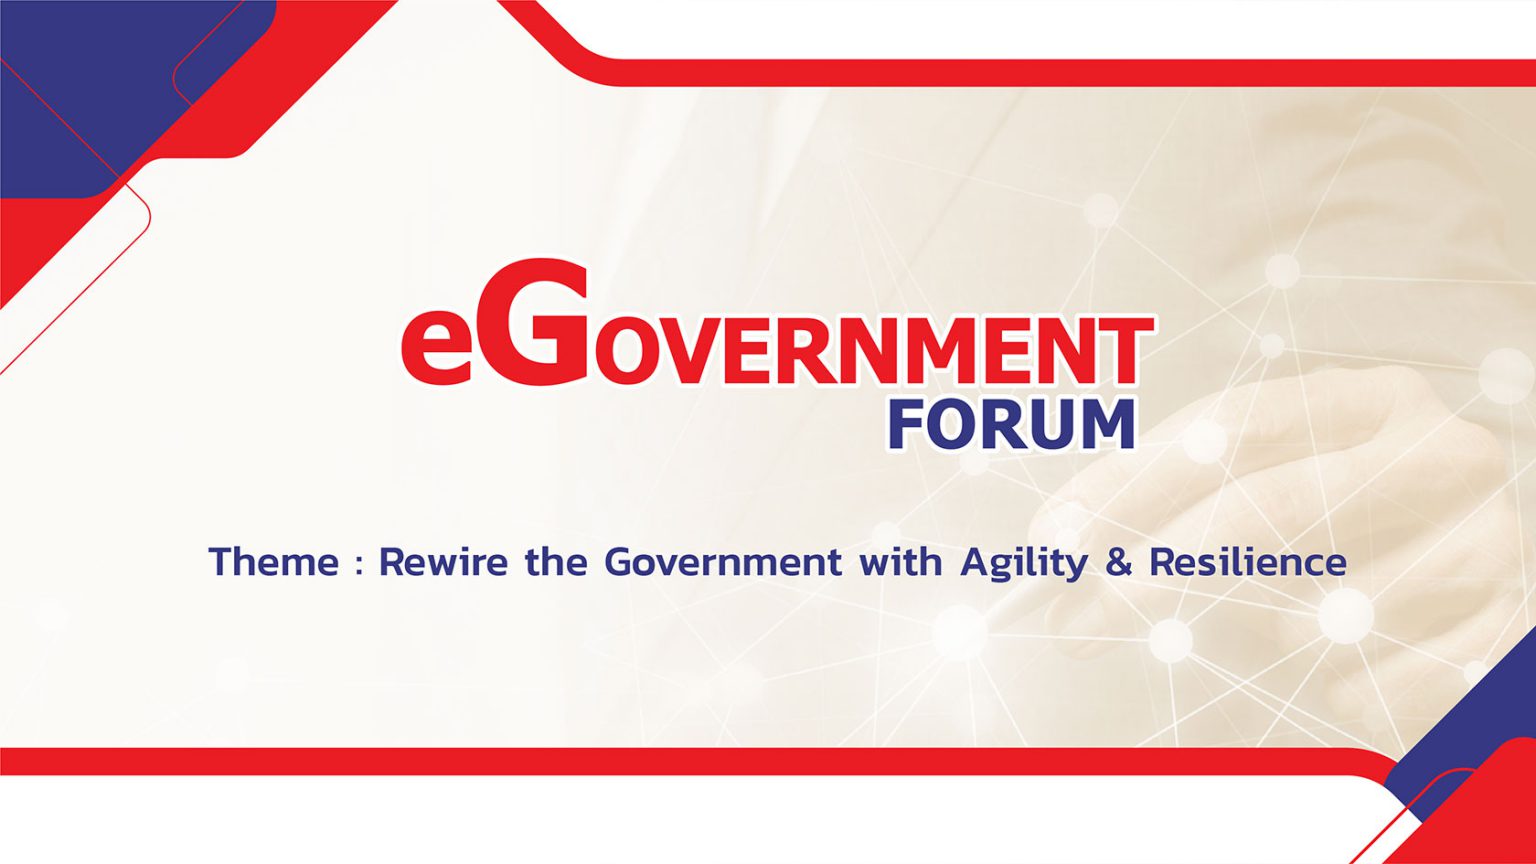 ขอเรียนเชิญเข้าร่วมงานอบรมสัมมนาวิชาโครงการ eGovernment Forum 2022 (Online Conference) ระหว่างวันที่ 25-26 พฤษภาคม 2565